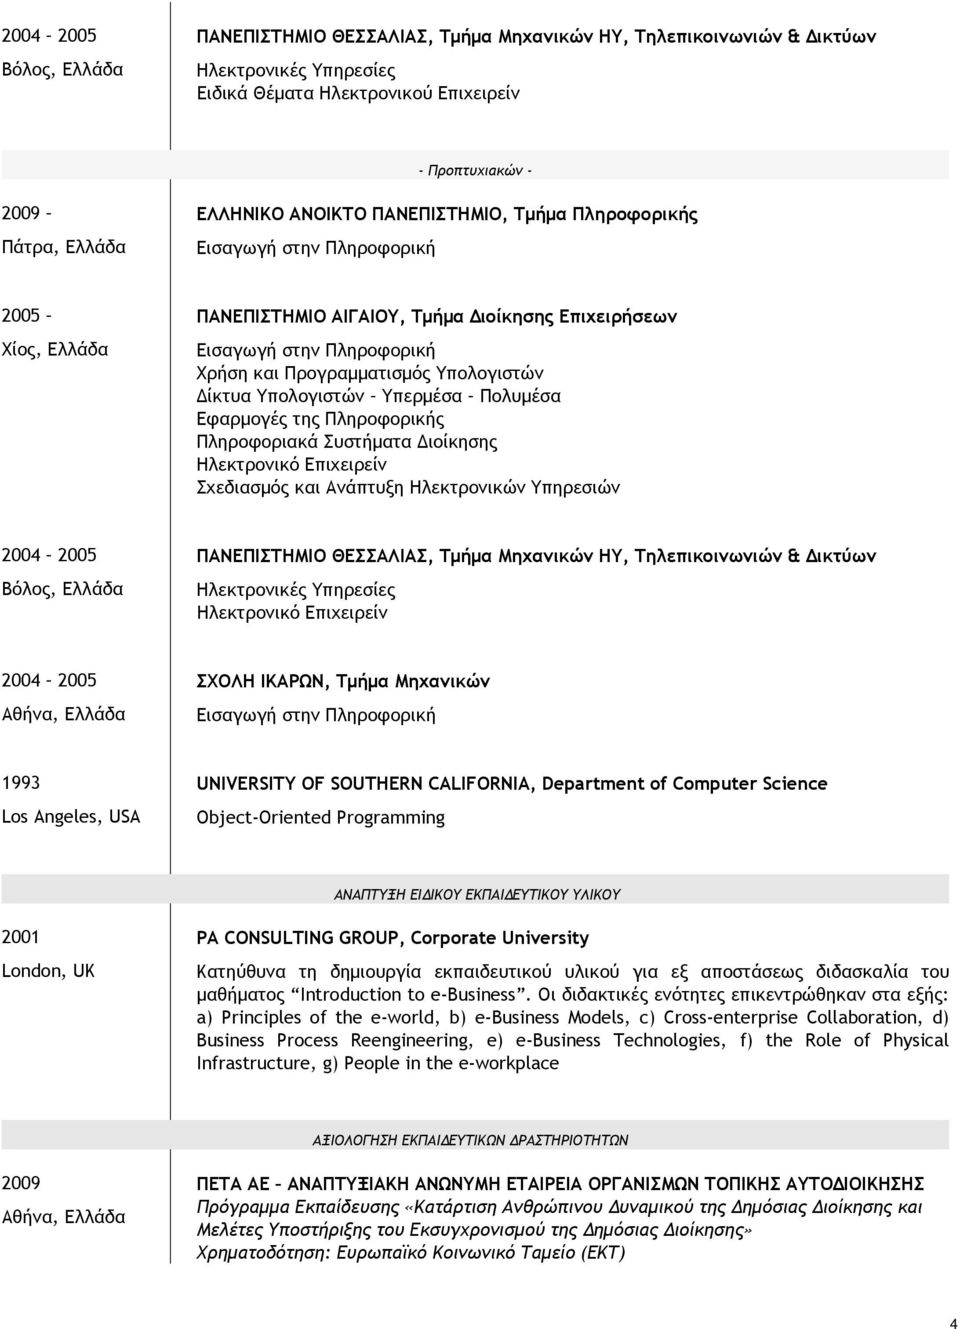 Υπολογιστών Υπερμέσα Πολυμέσα Εφαρμογές της Πληροφορικής Πληροφοριακά Συστήματα Διοίκησης Ηλεκτρονικό Επιχειρείν Σχεδιασμός και Ανάπτυξη Ηλεκτρονικών Υπηρεσιών 2004 2005 Βόλος, Ελλάδα ΠΑΝΕΠΙΣΤΗΜΙΟ